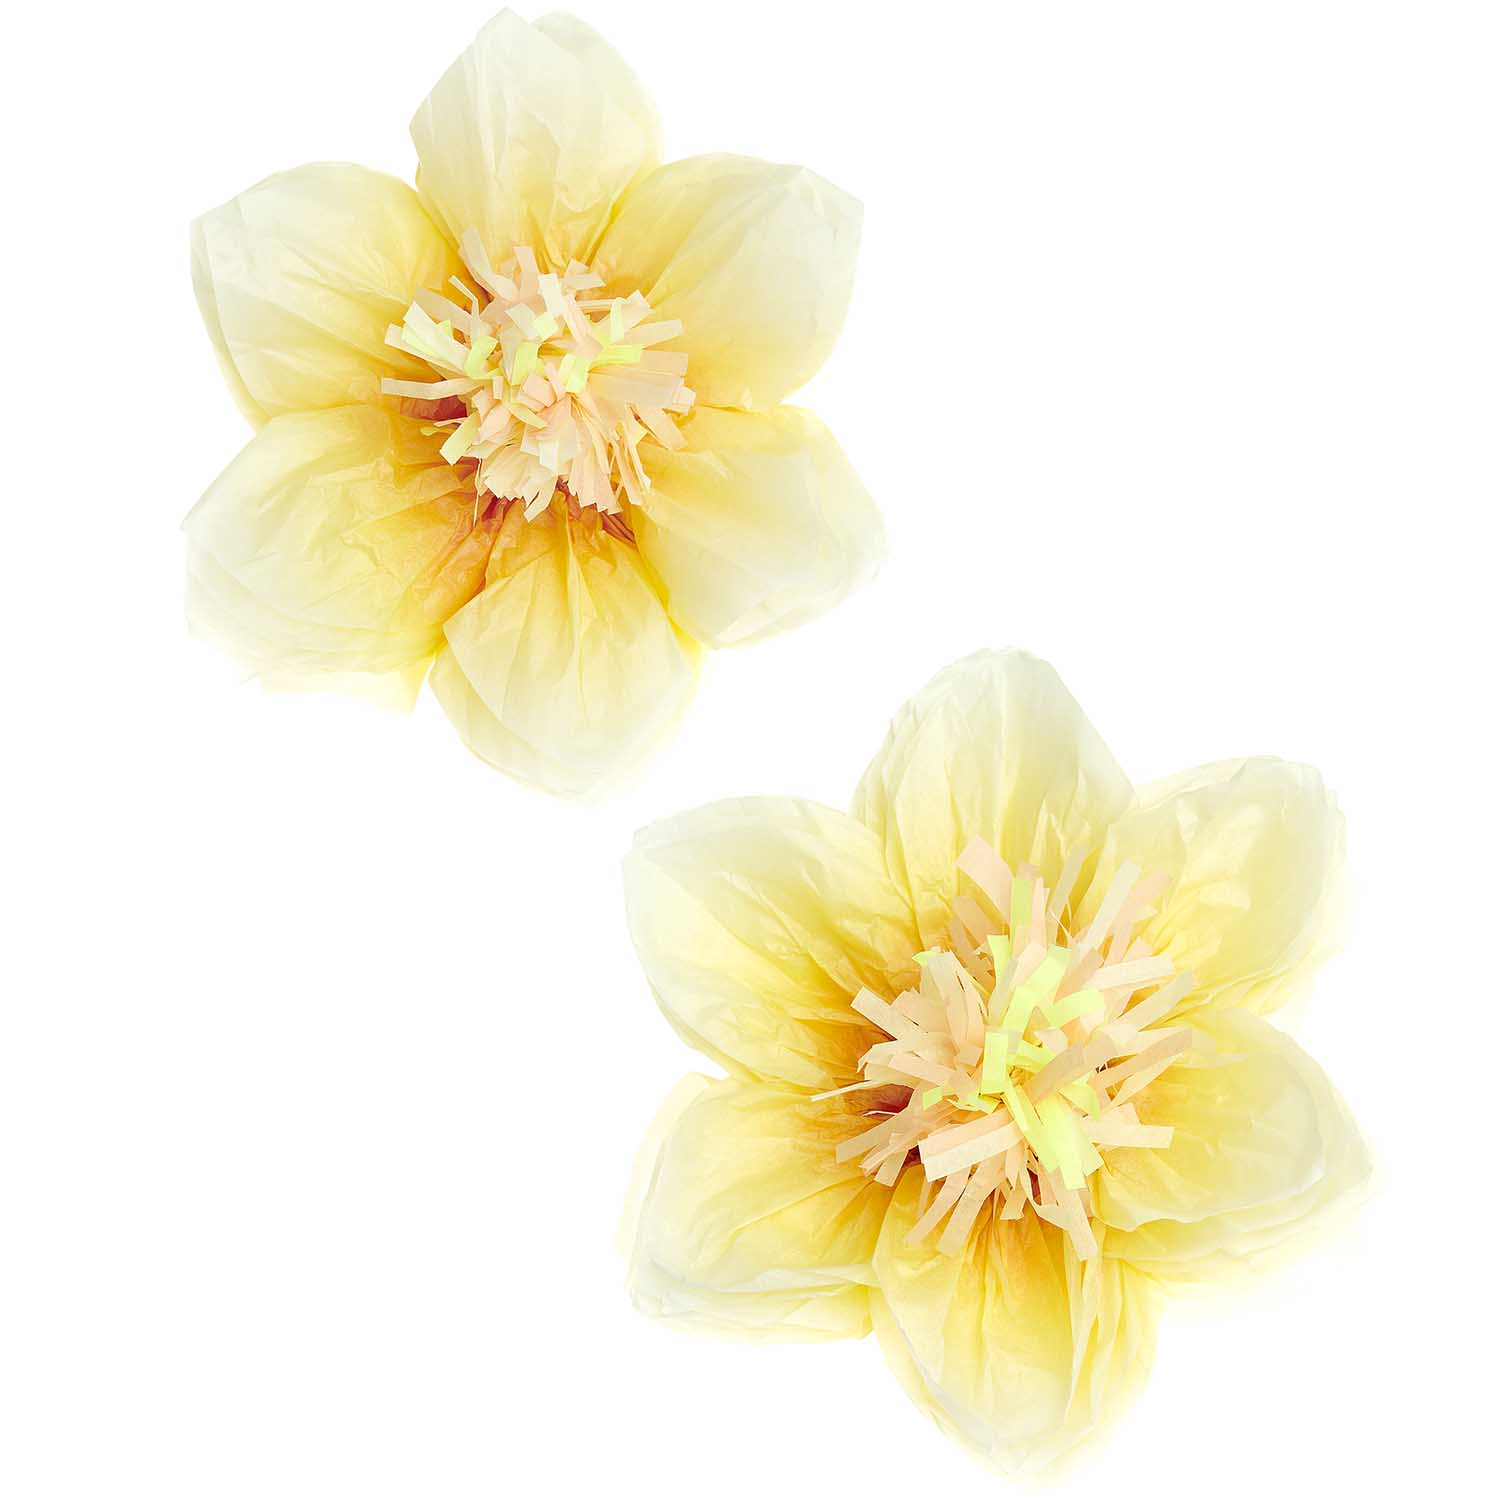 papieren bloemen tissue papier narcissen deco geel fest deco decoratie verjaardag pasen lente lentefeest communie